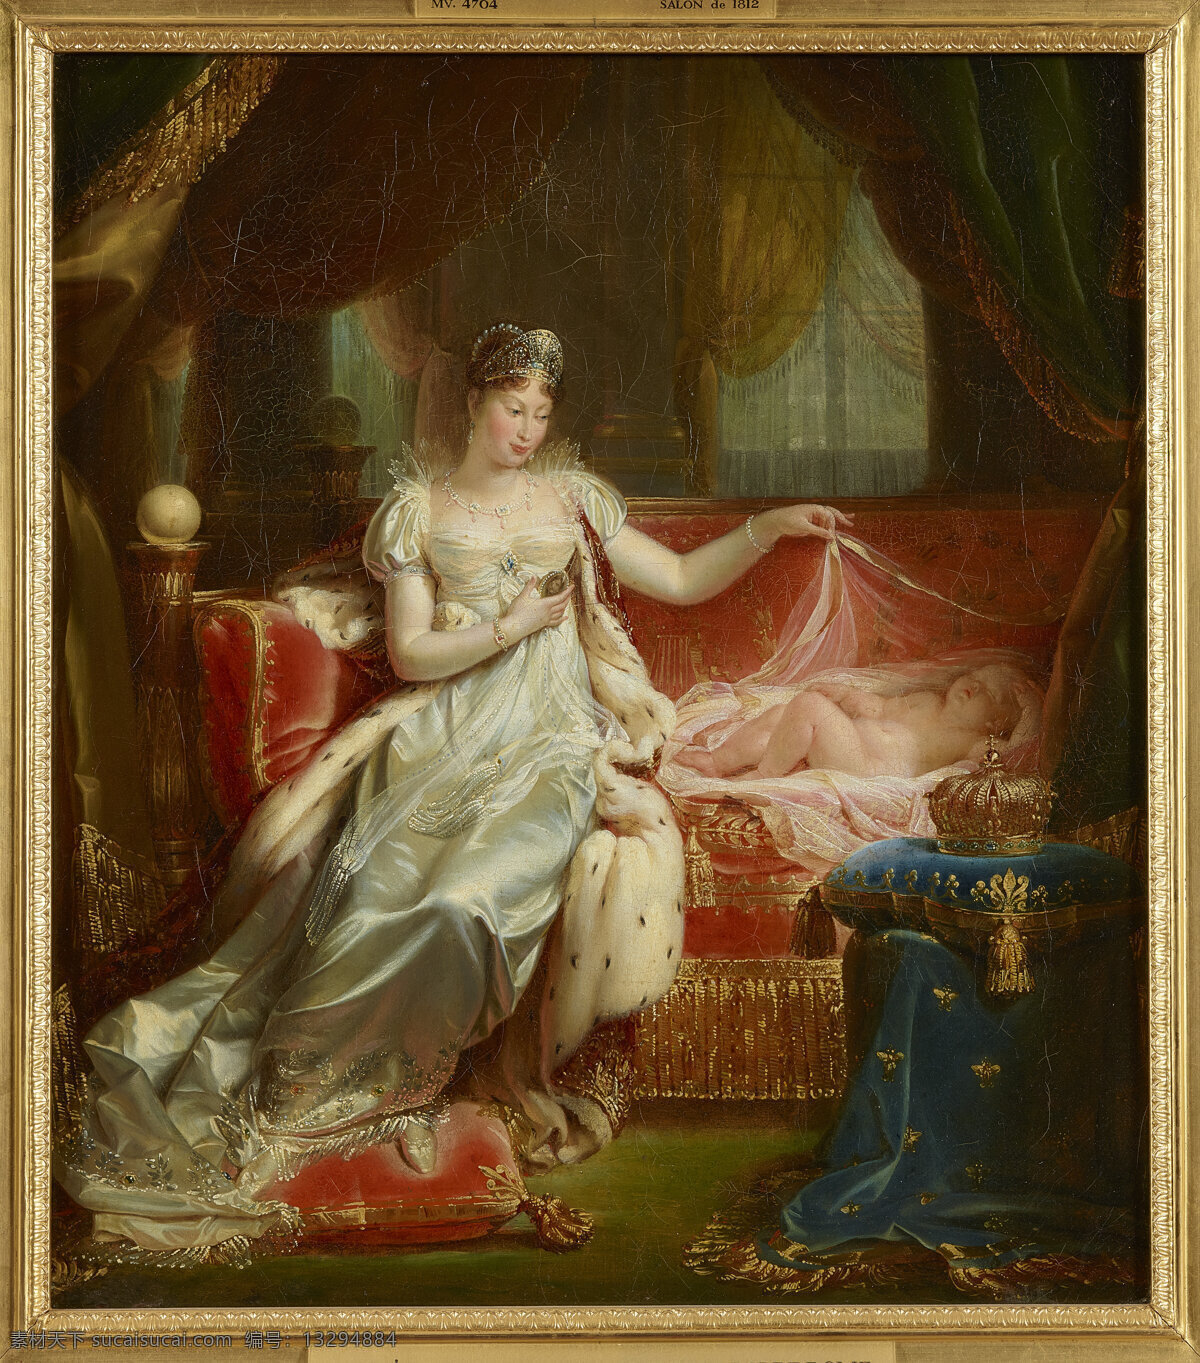 约瑟夫 弗朗克作品 奥地利画家 法国皇后 玛丽娅路易丝 长子 罗马国王 19世纪油画 油画 文化艺术 绘画书法